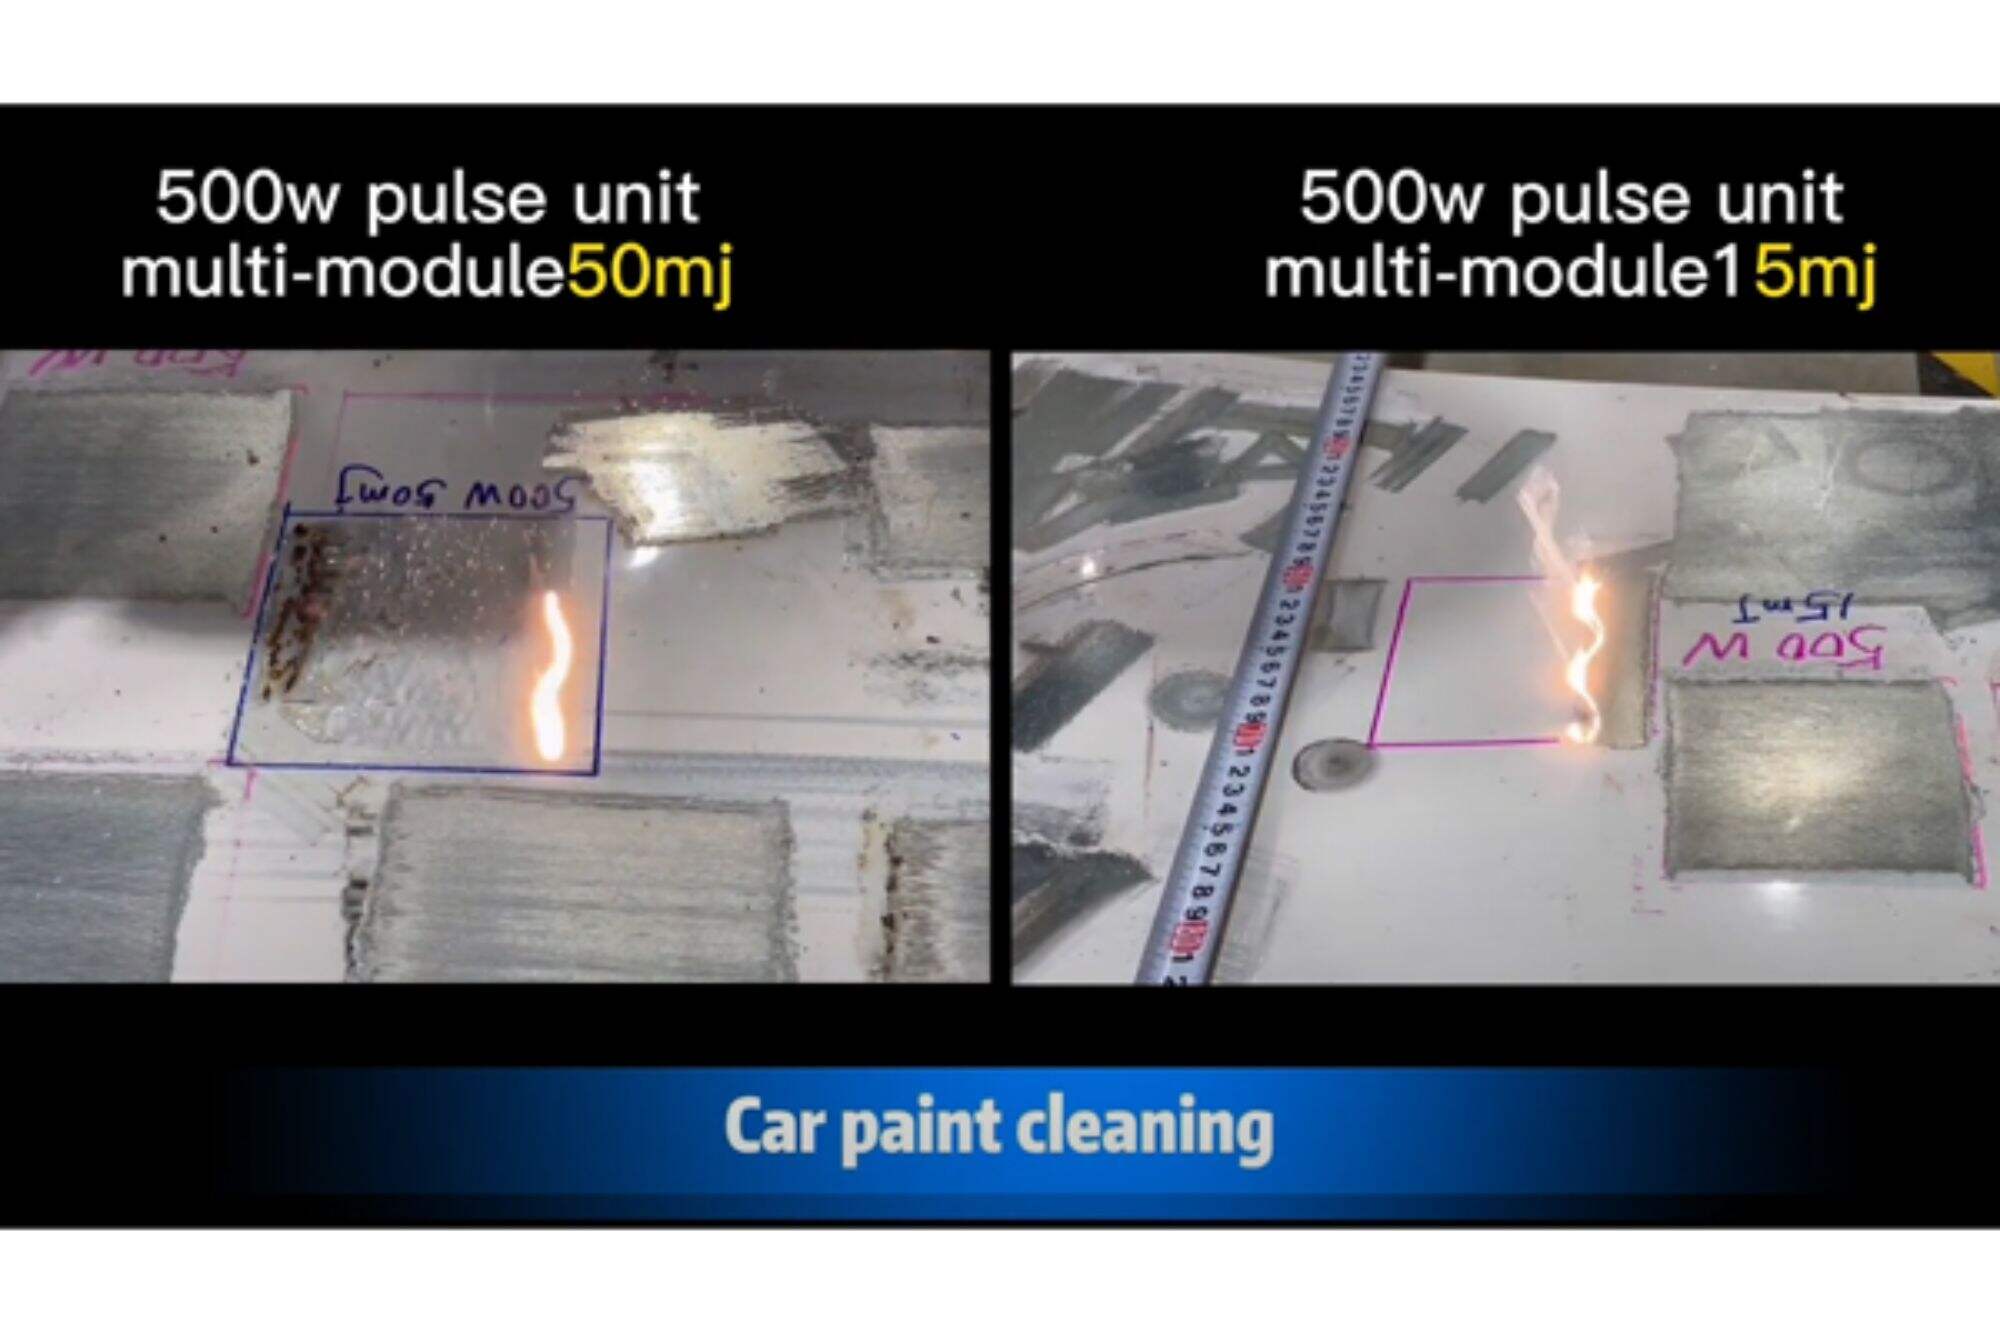 Maszyna czyszcząca pulsacyjna 50mj vs 15mj 500w do czyszczenia lakieru samochodowego